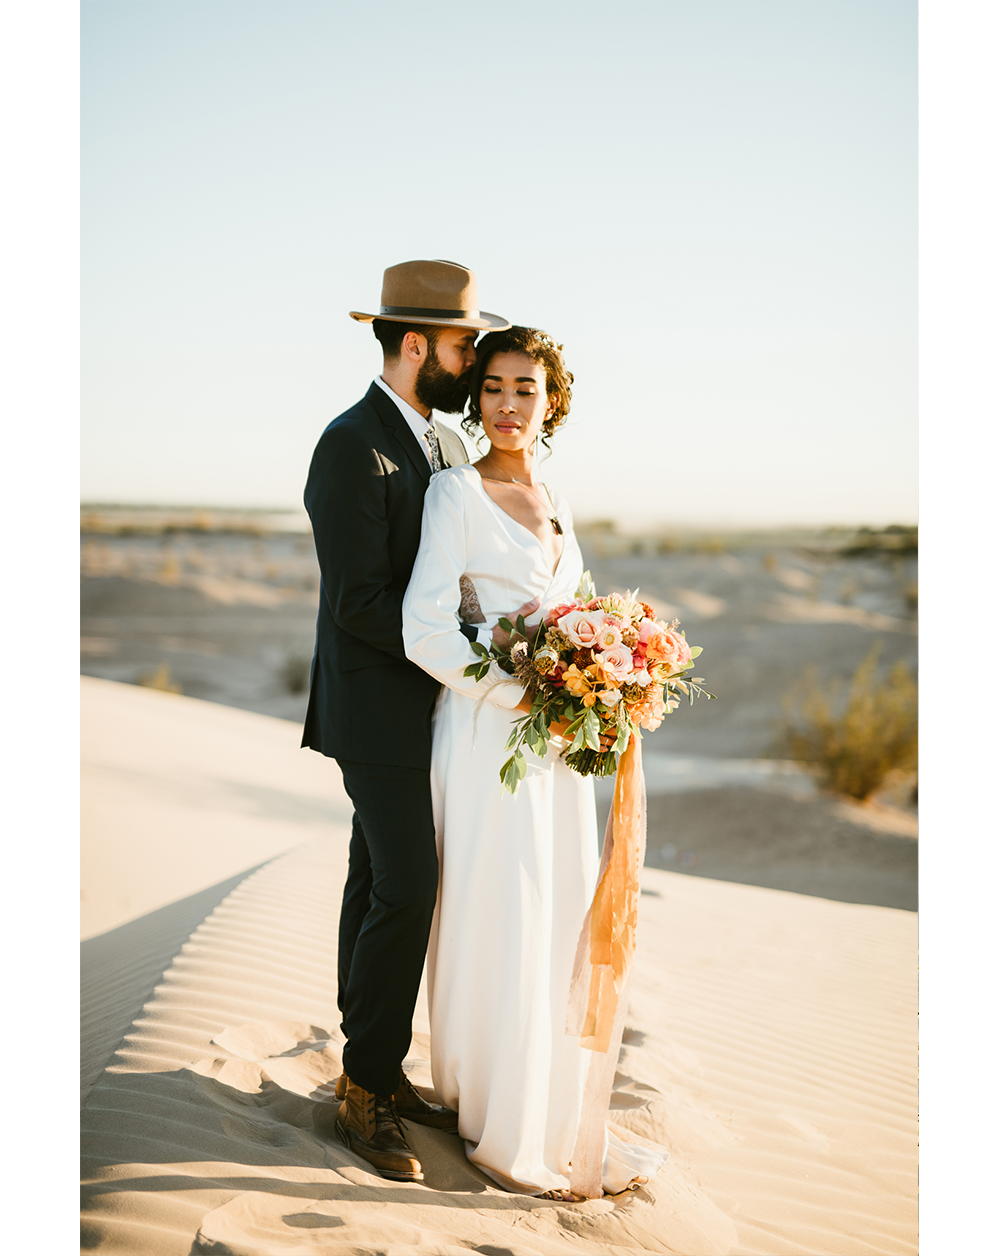 Frida enamorada boda en el desierto de baja california mexico 18.png